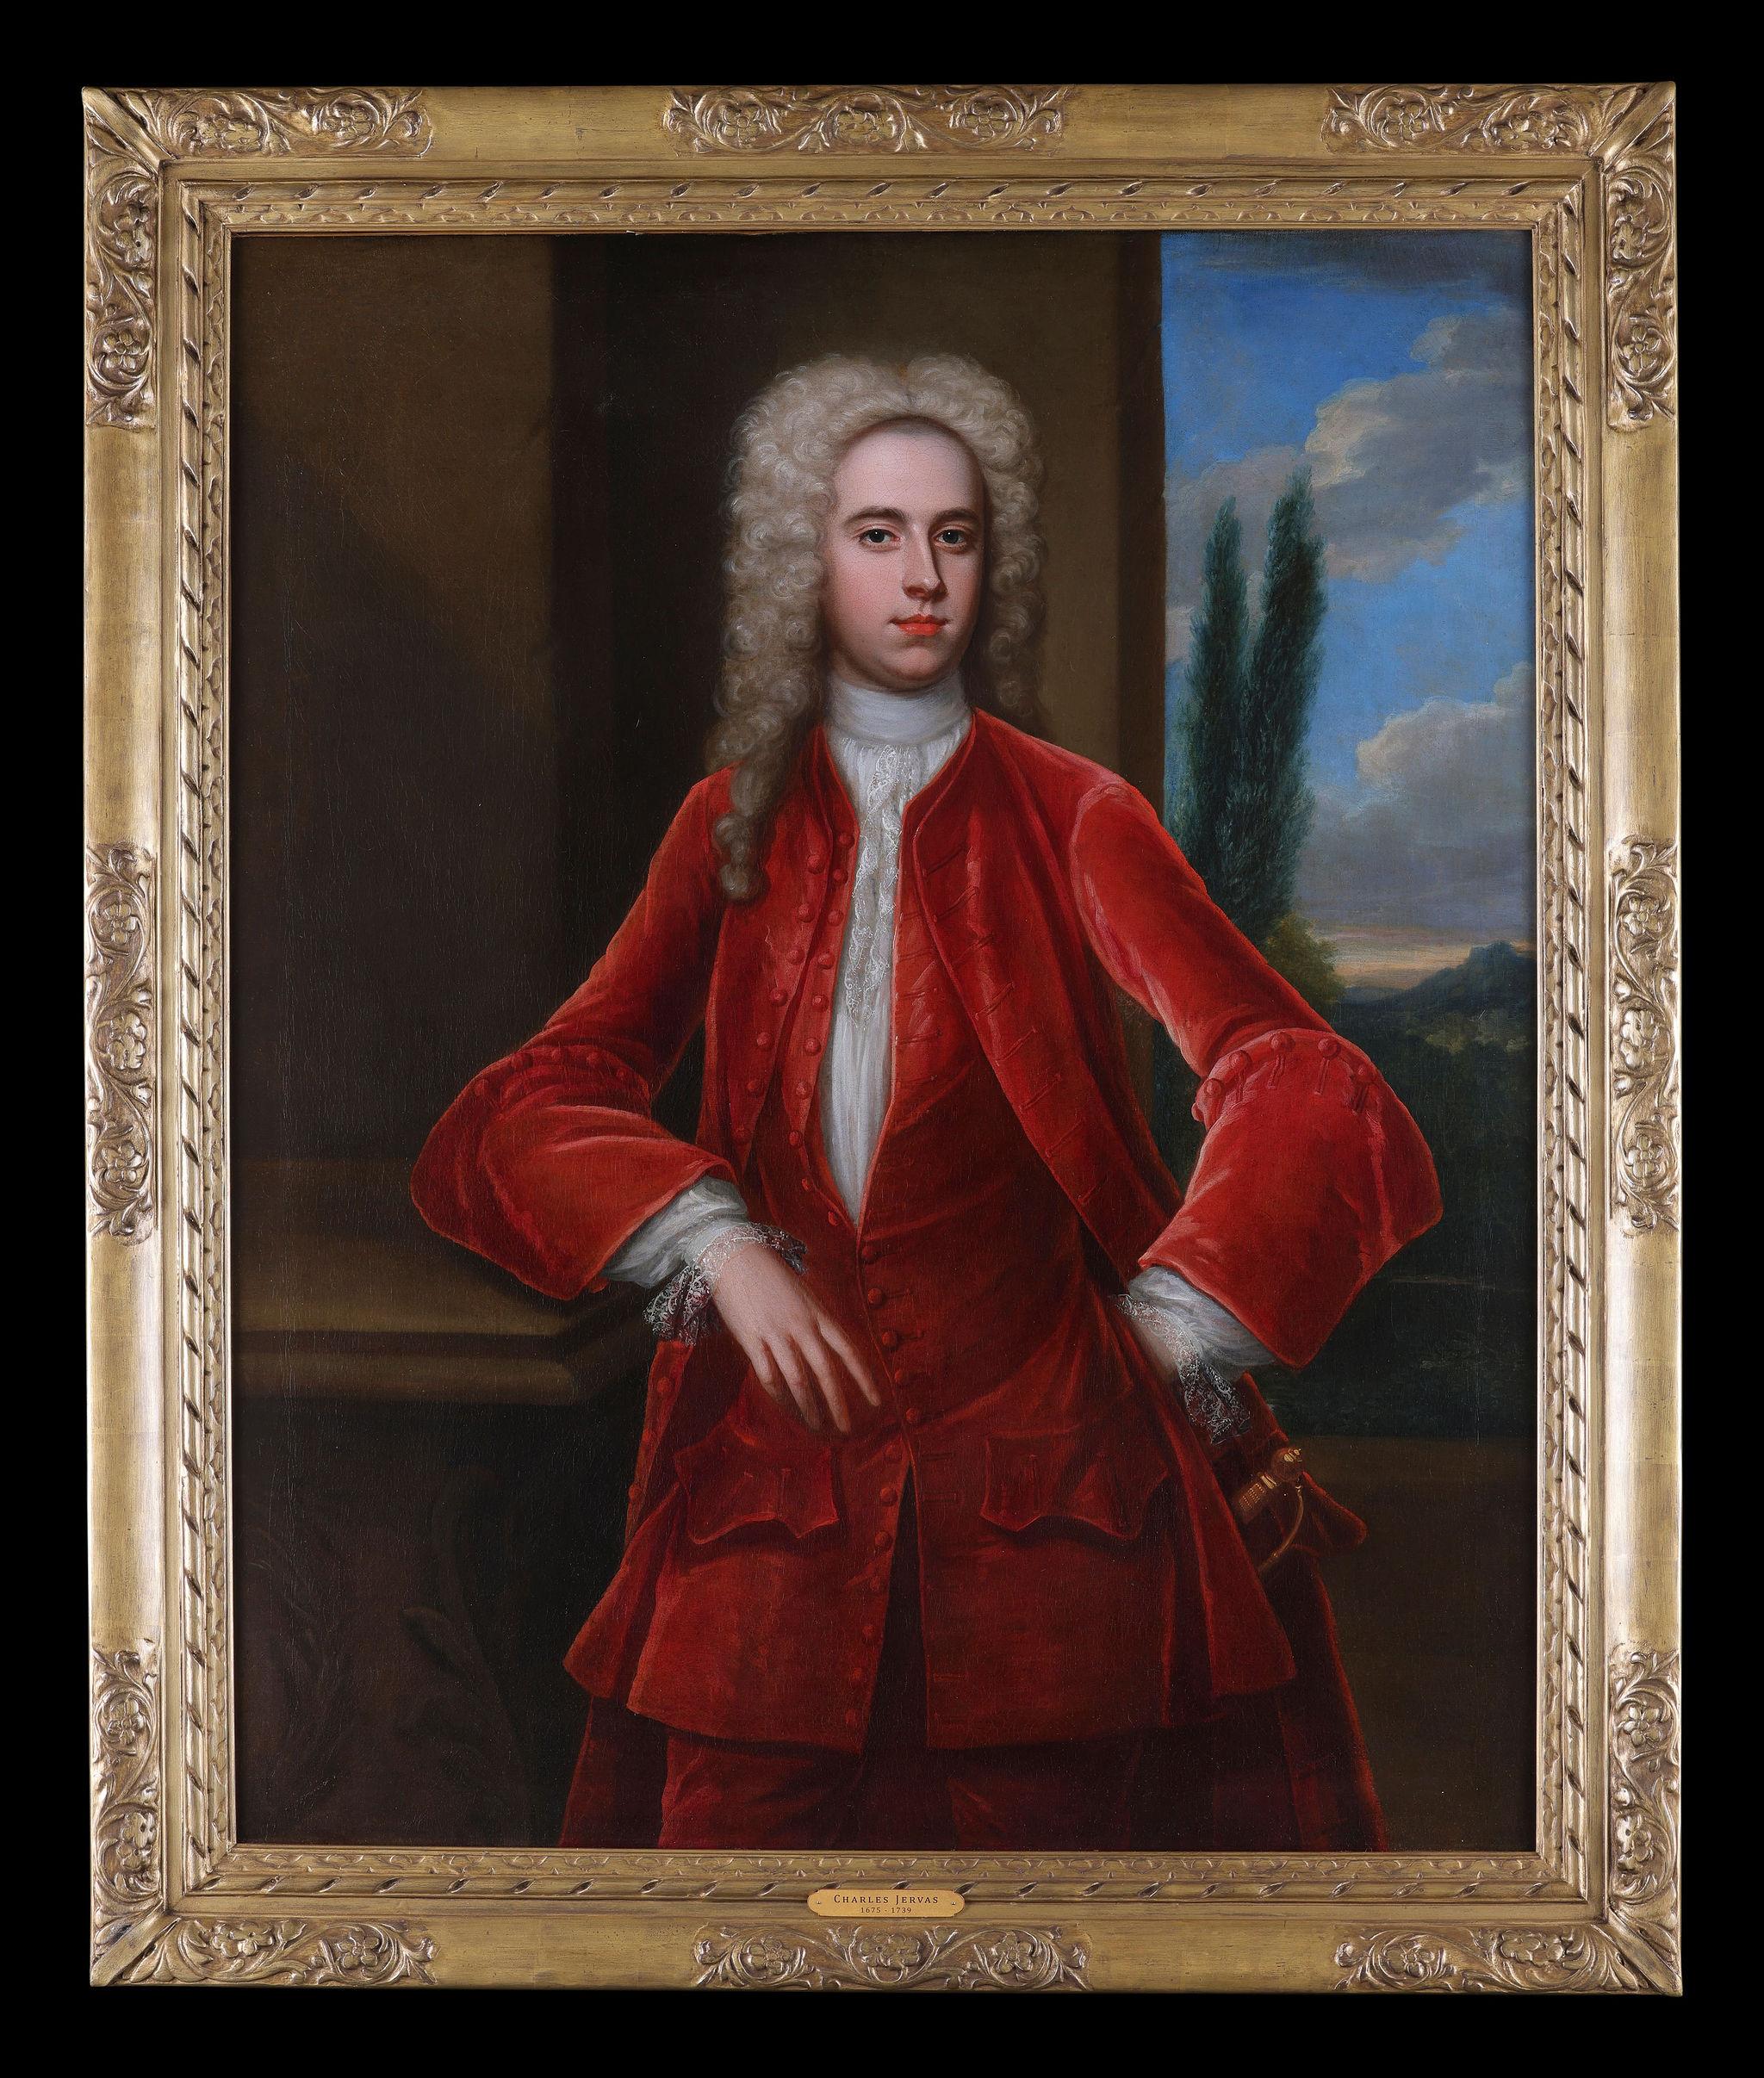 Charles Jervas Figurative Painting – Porträt eines Mannes, möglicherweise Arthur Viscount Irwin, Temple Newsam, Öl auf Leinwand